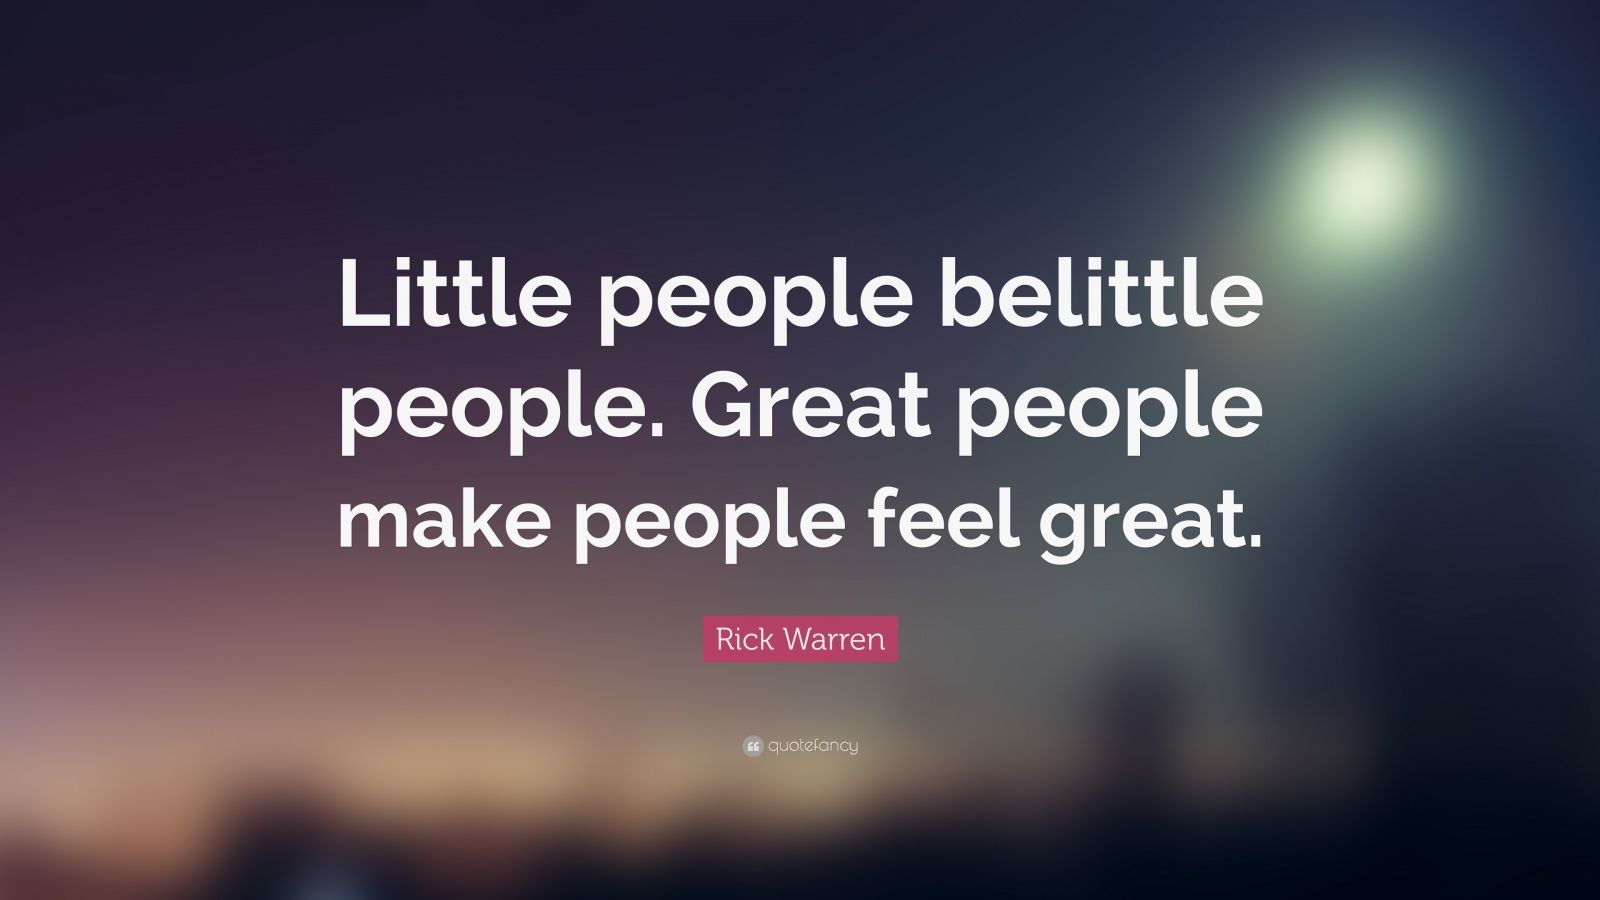 Rick Warren Quote: “Little people belittle people. Great people make